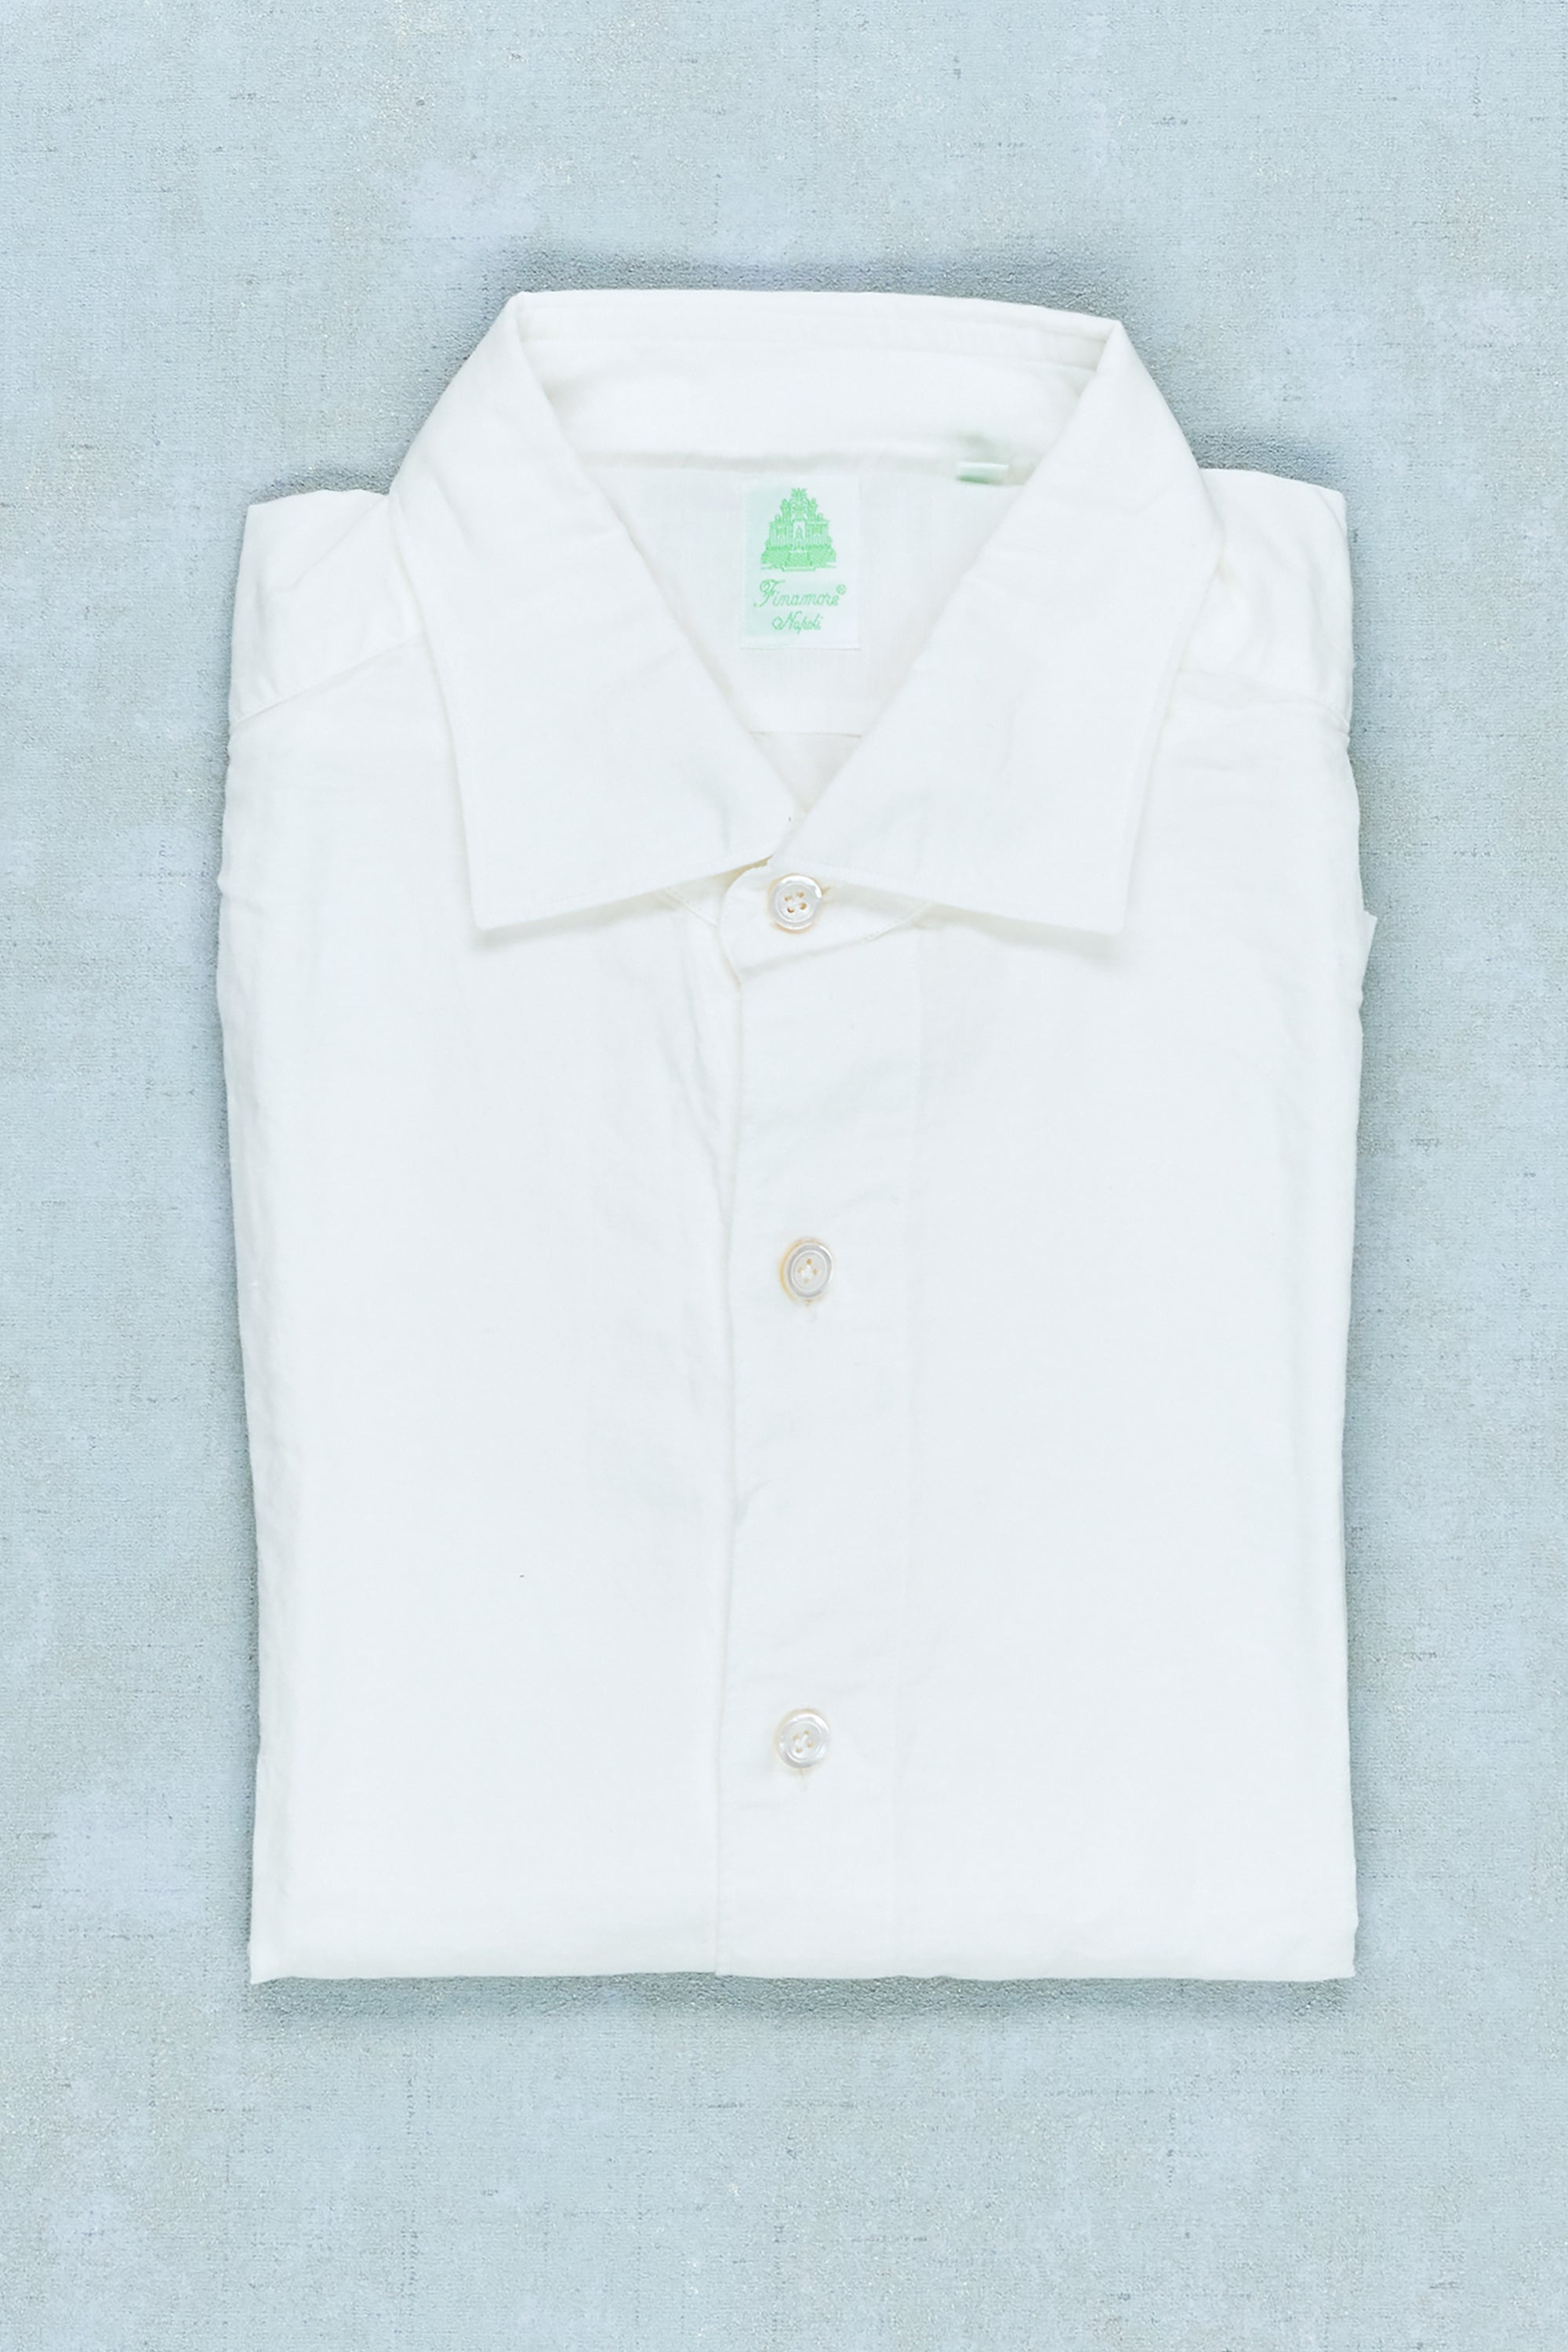 Finamore White Cotton/Linen Spread Collar Sport Shirt